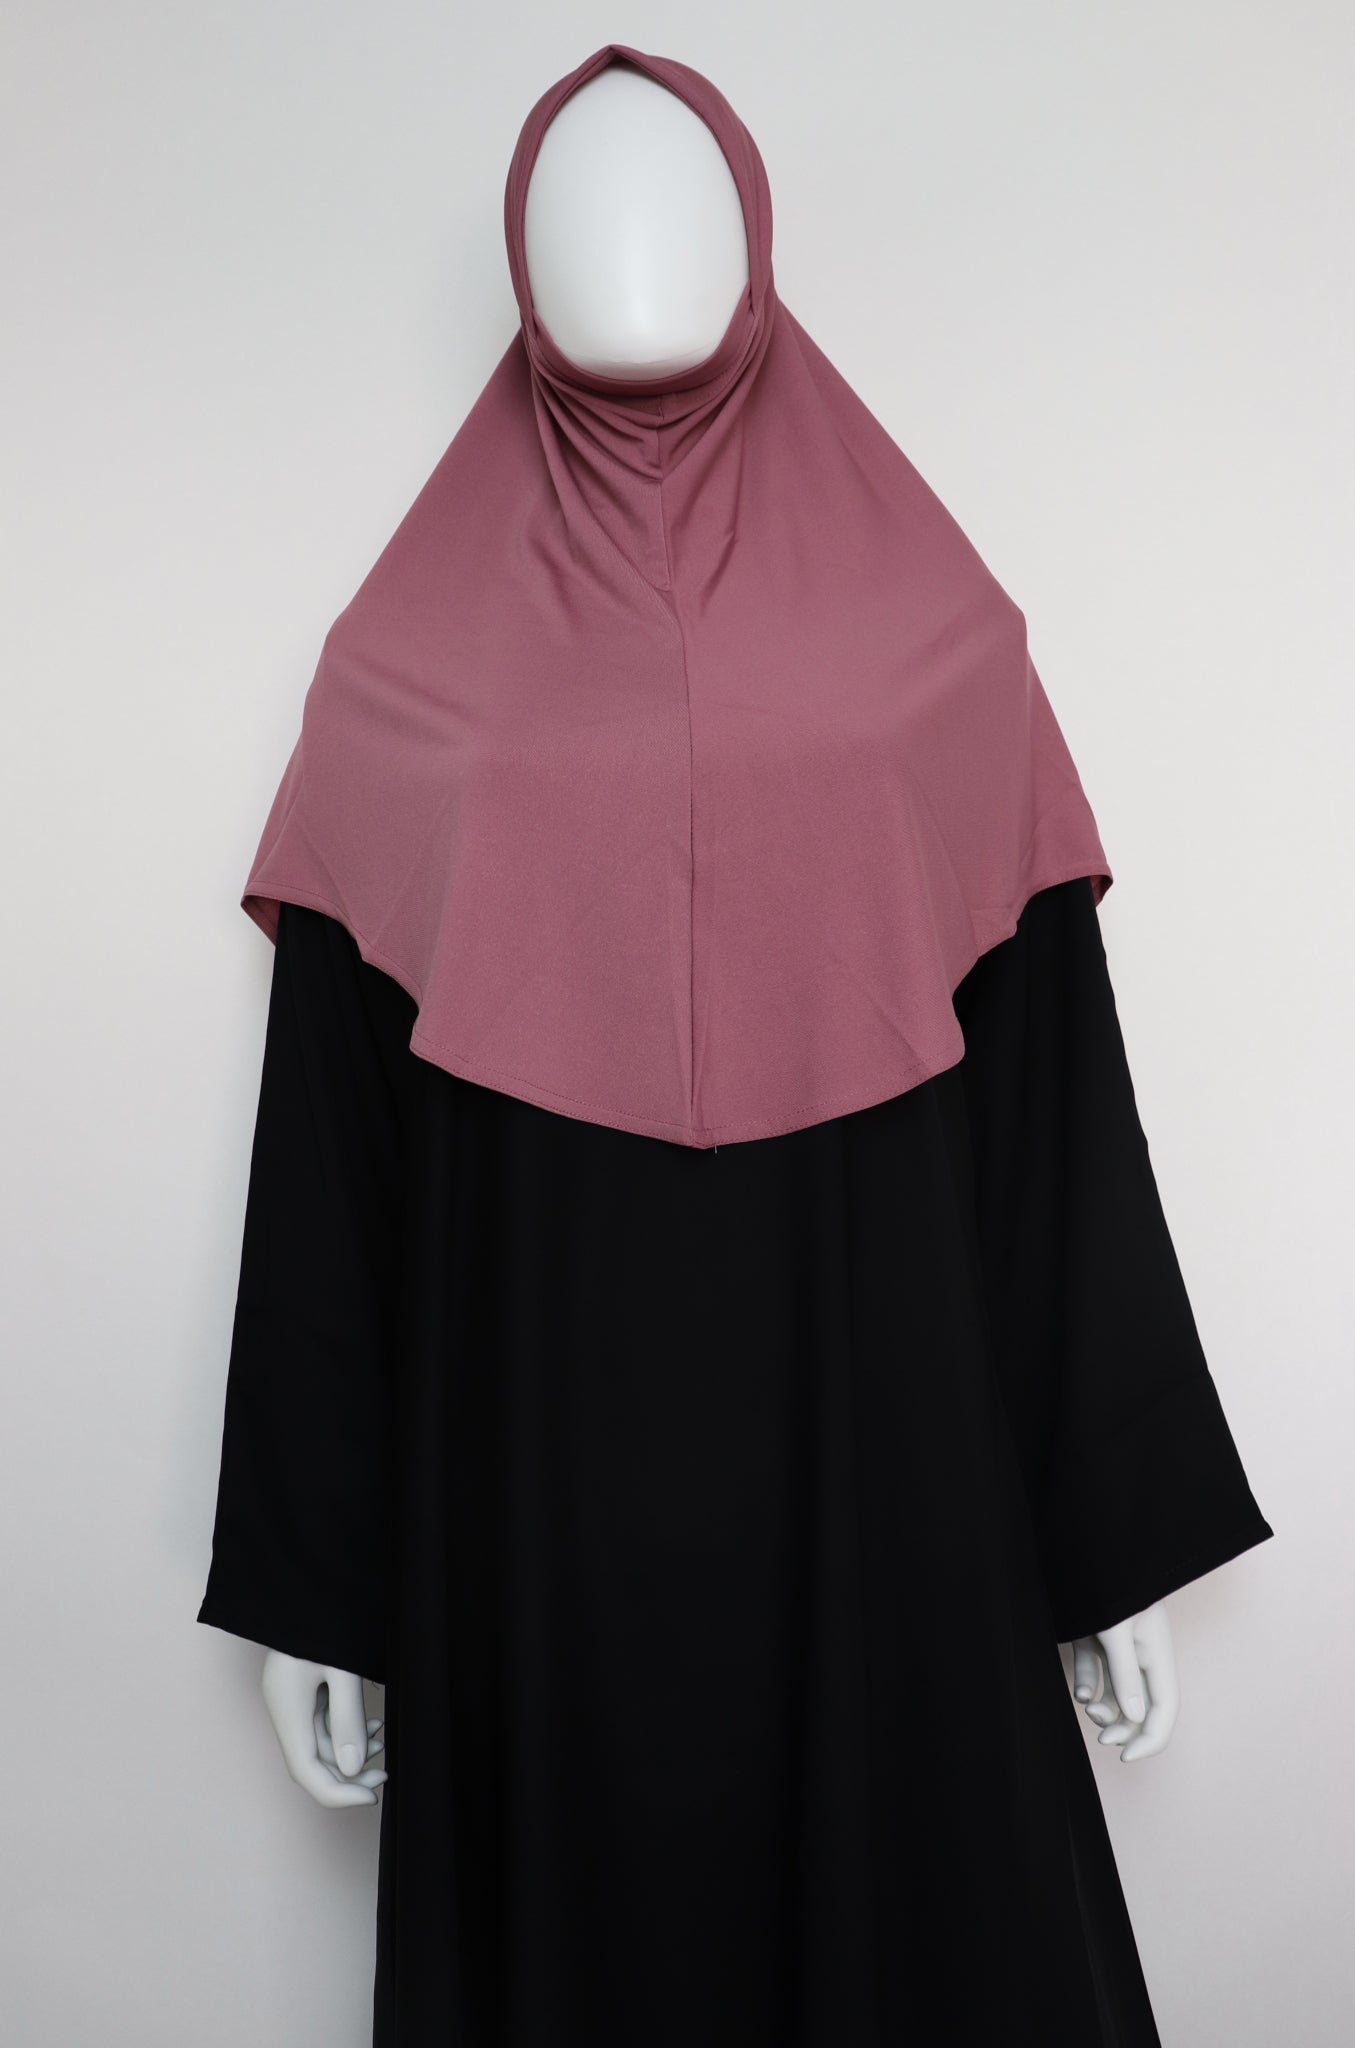 One Piece Amira Slip On Instant Hijab